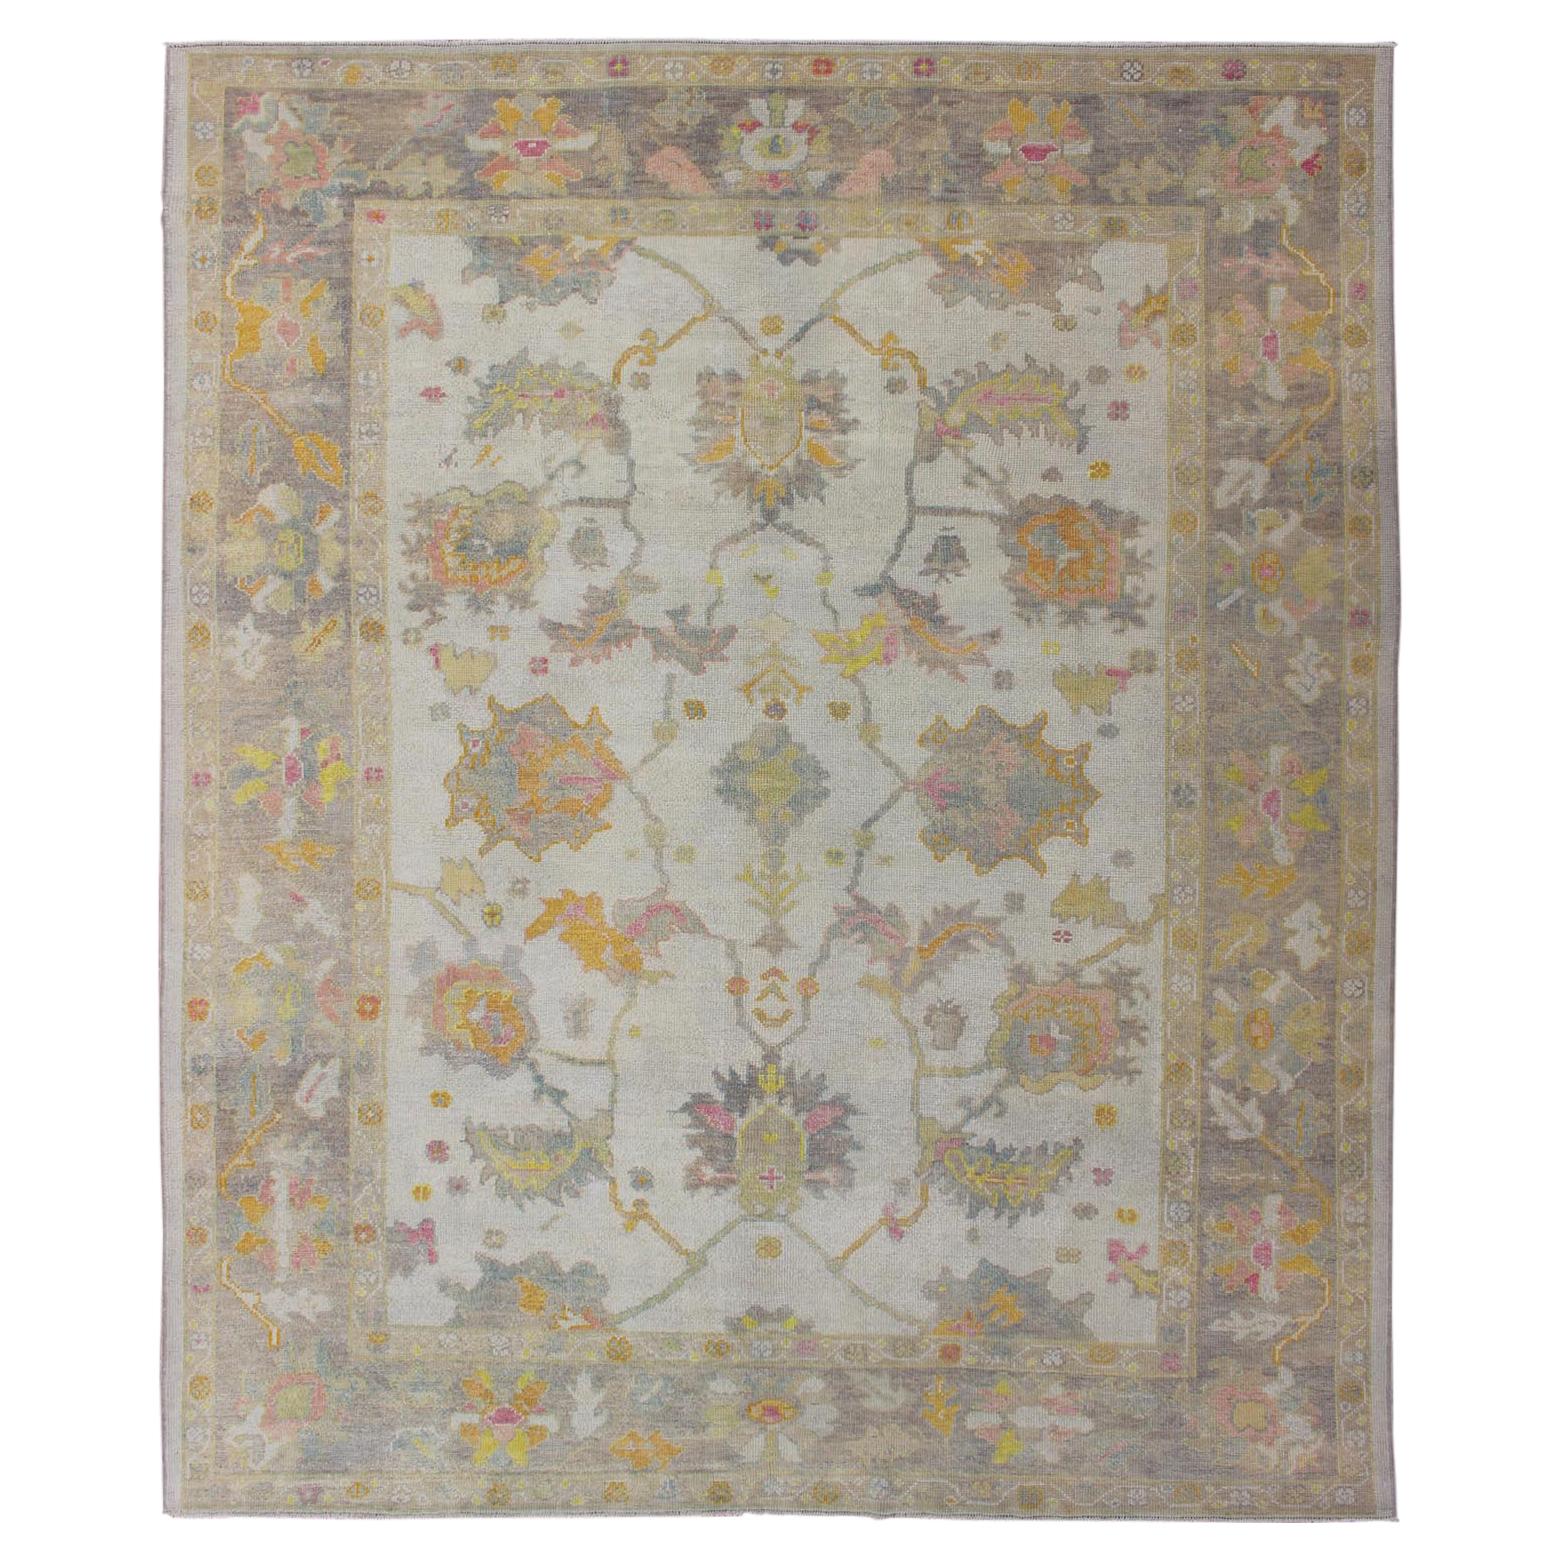 Türkischer Oushak-Teppich mit gedämpfter Farbpalette und All-Over-Blumenmuster